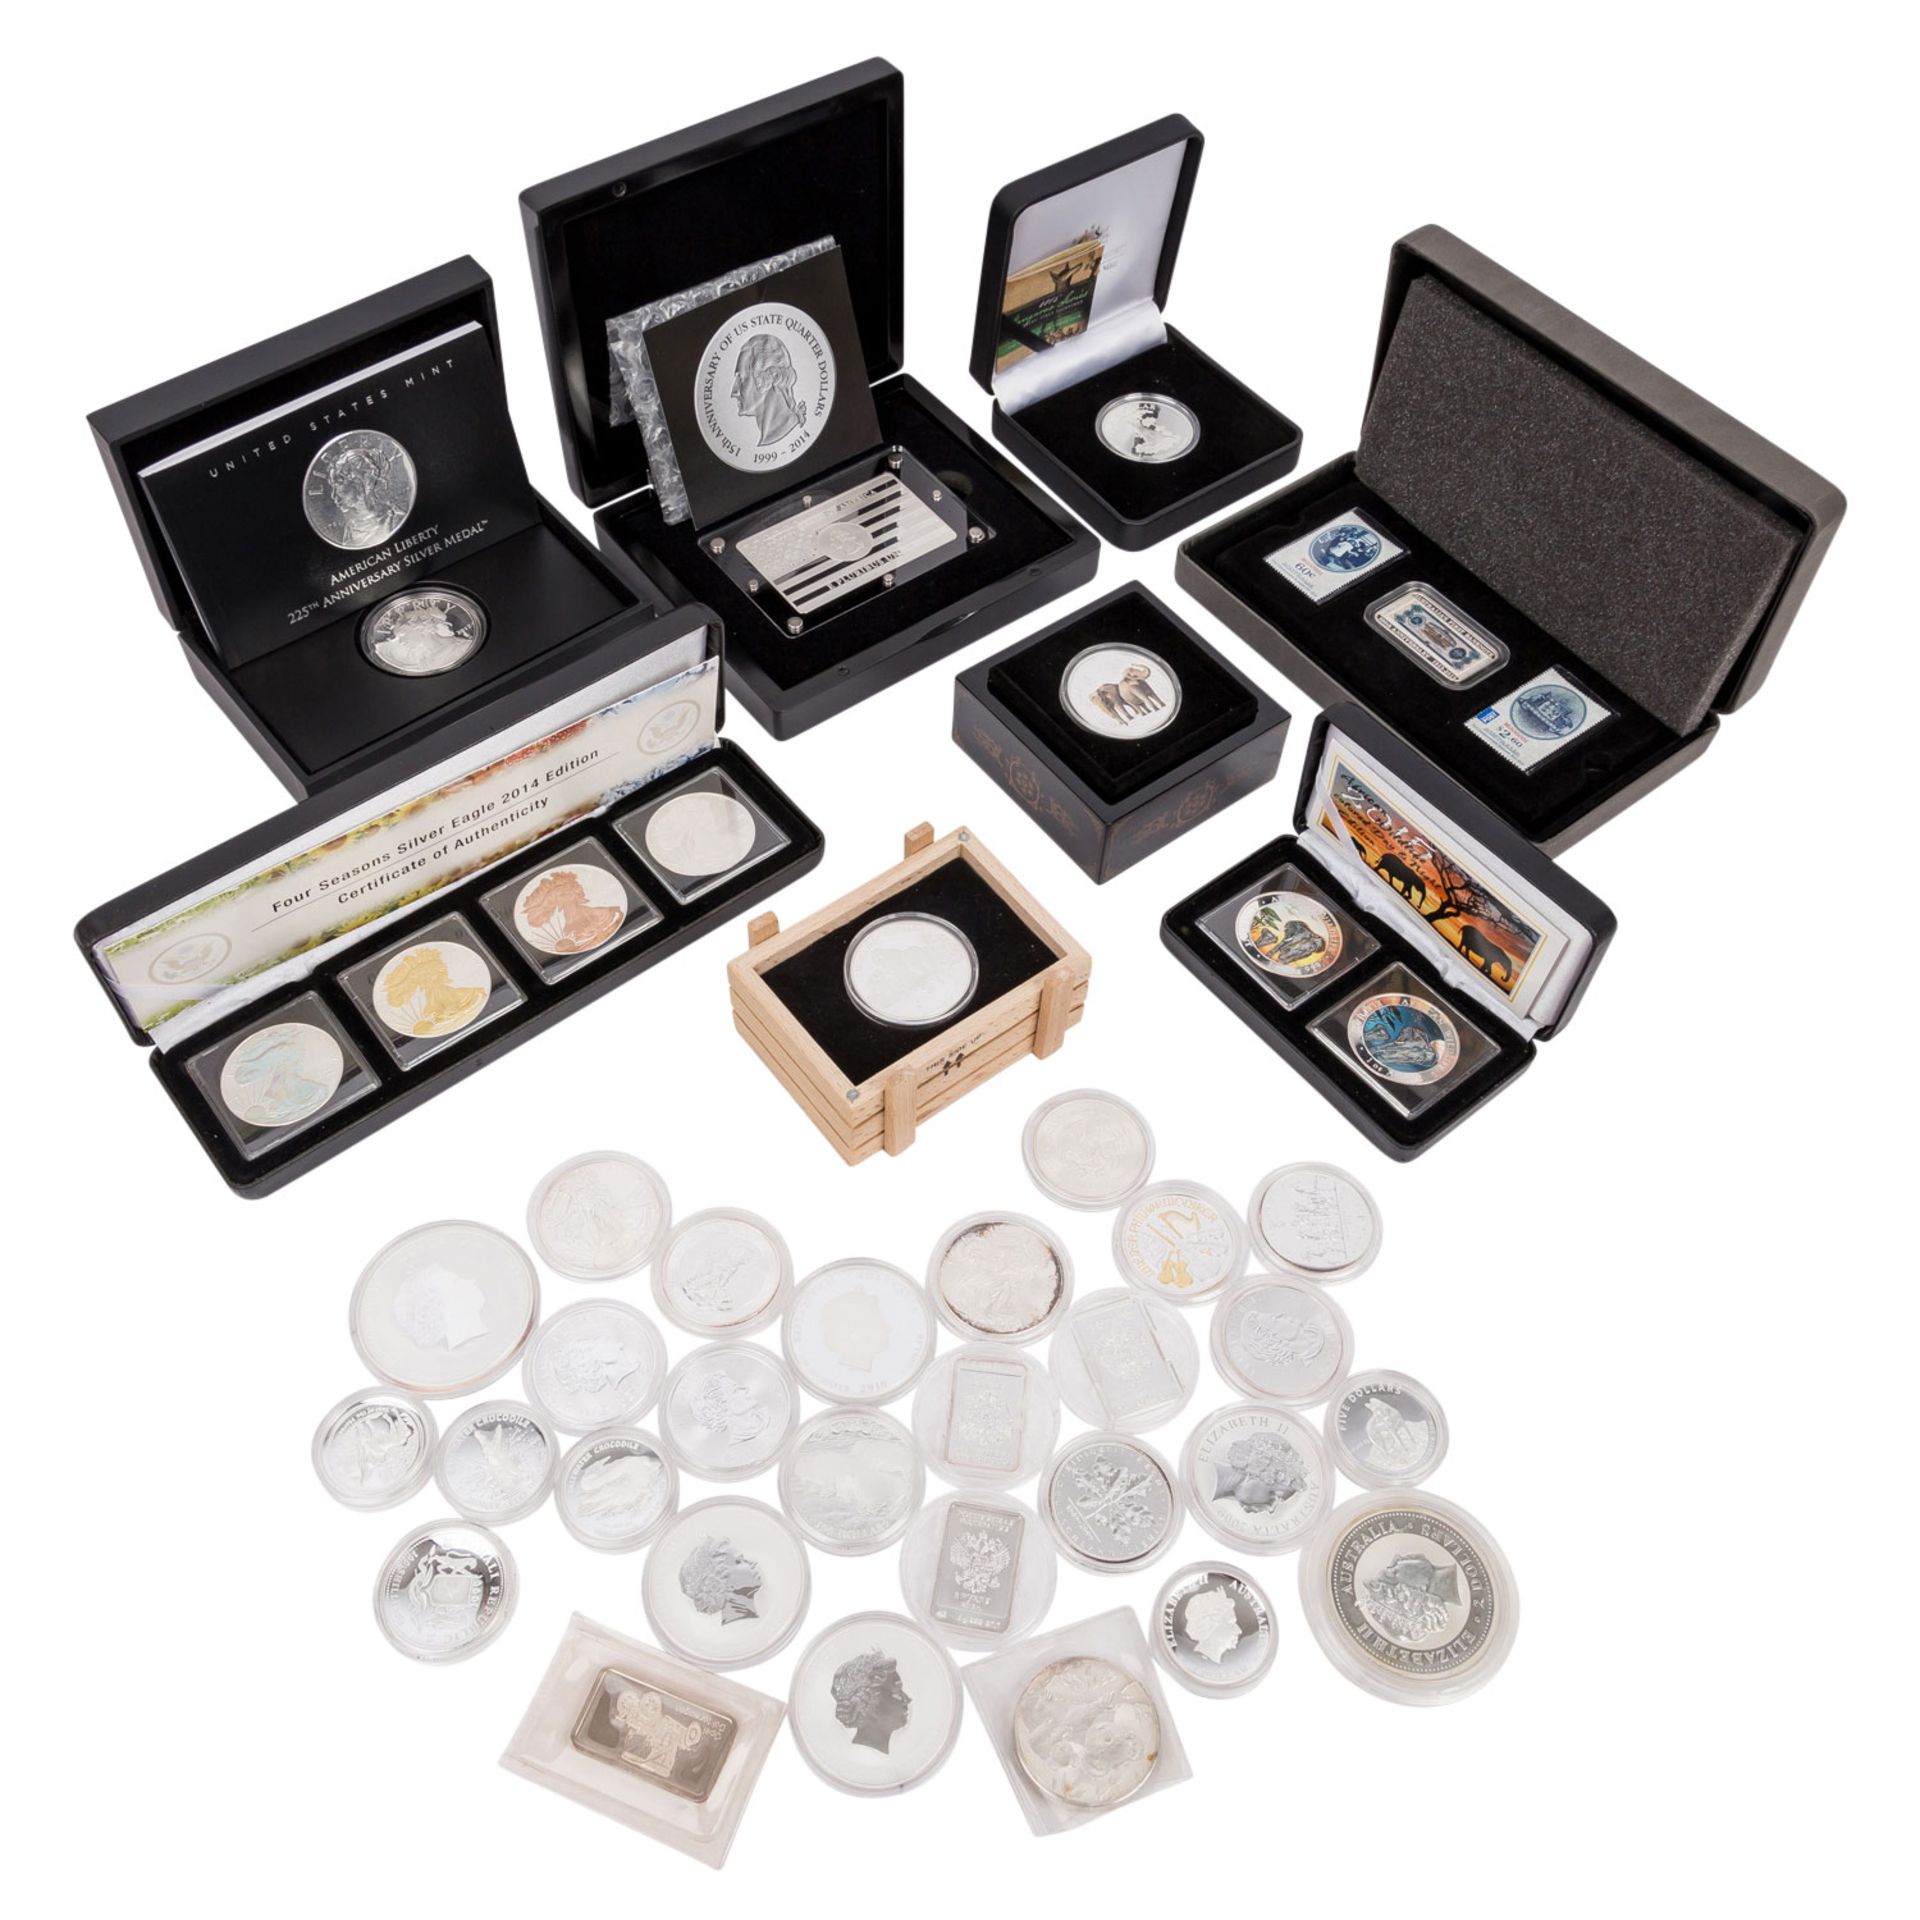 Silberanlagemünzen aus aller Welt. 40 Stück.